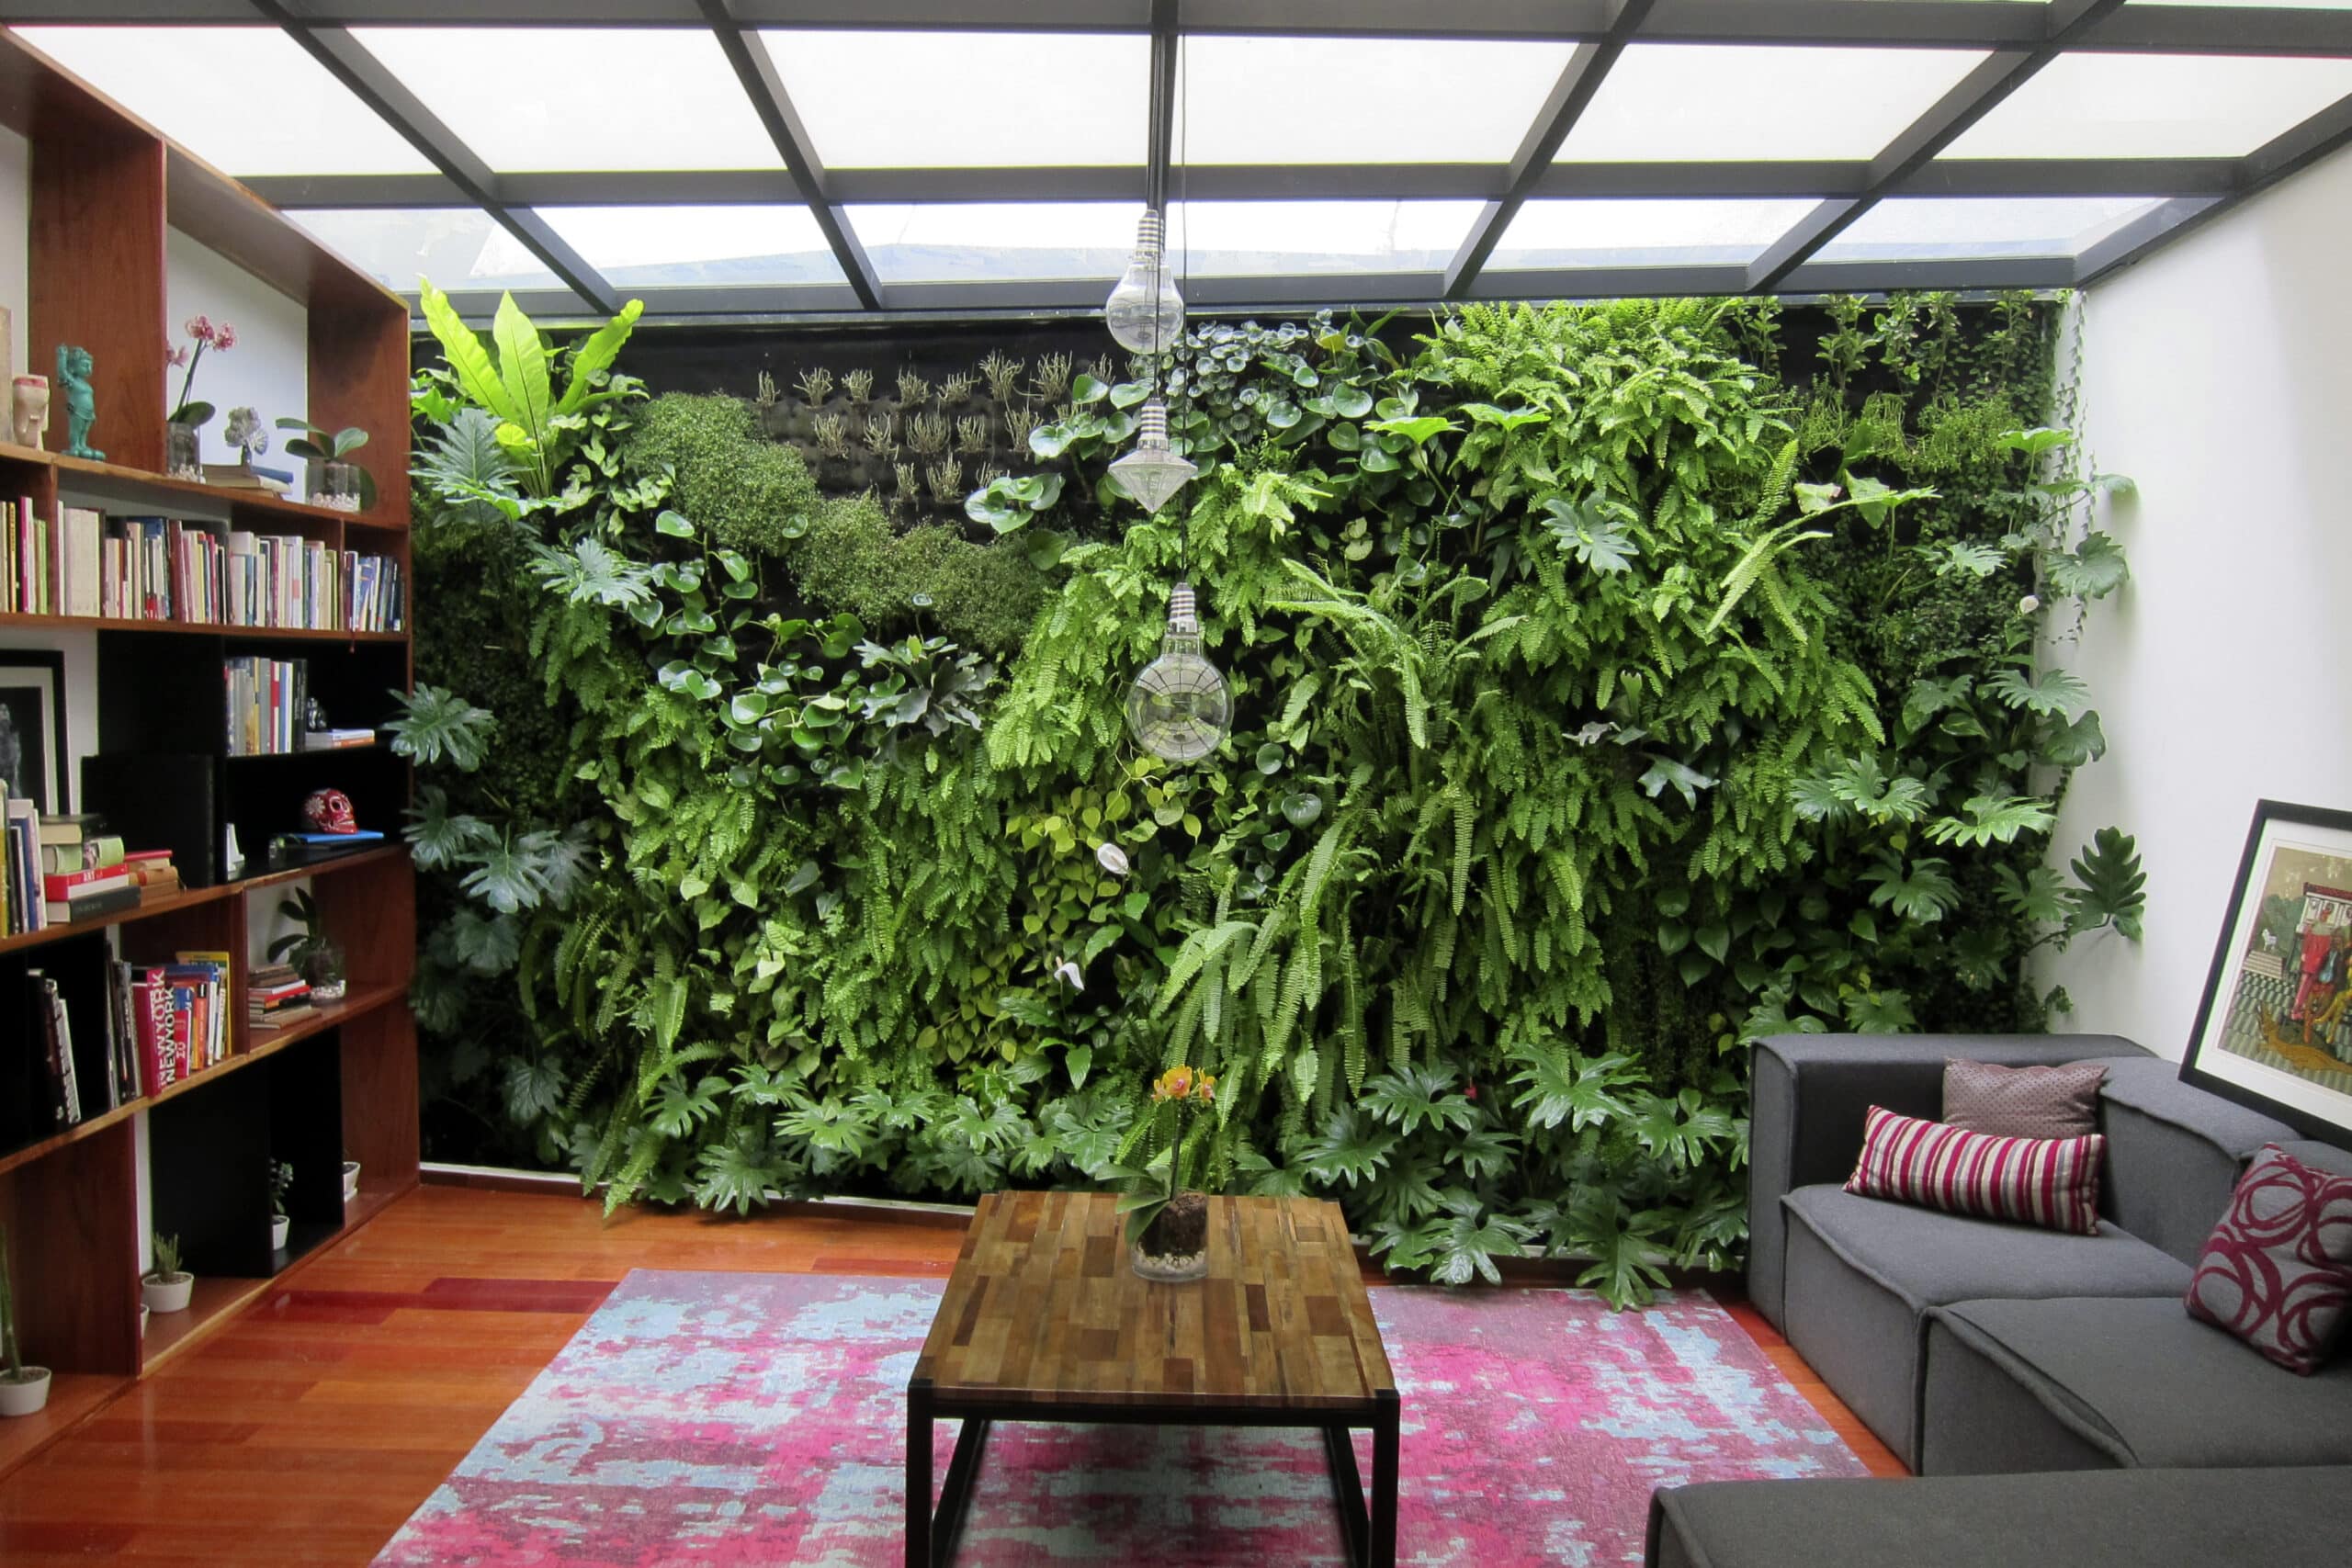 Muro verde con vegetación para interior